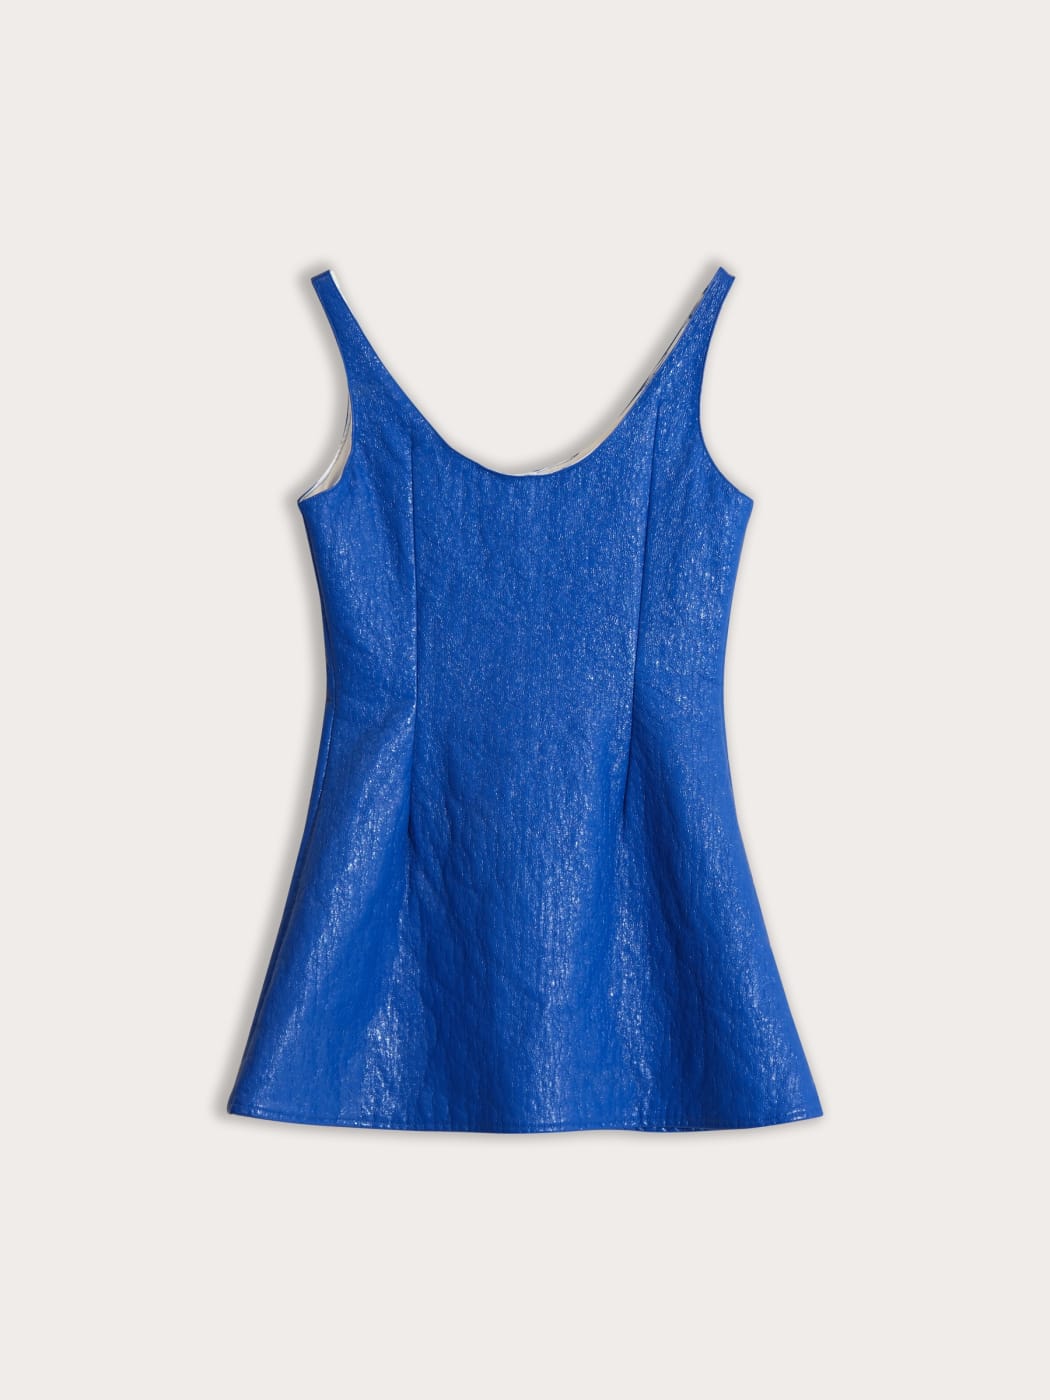 Photo secondaire du produit Robe Mini à Bretelles Bleu Electrique de la marque Maison J. Simone